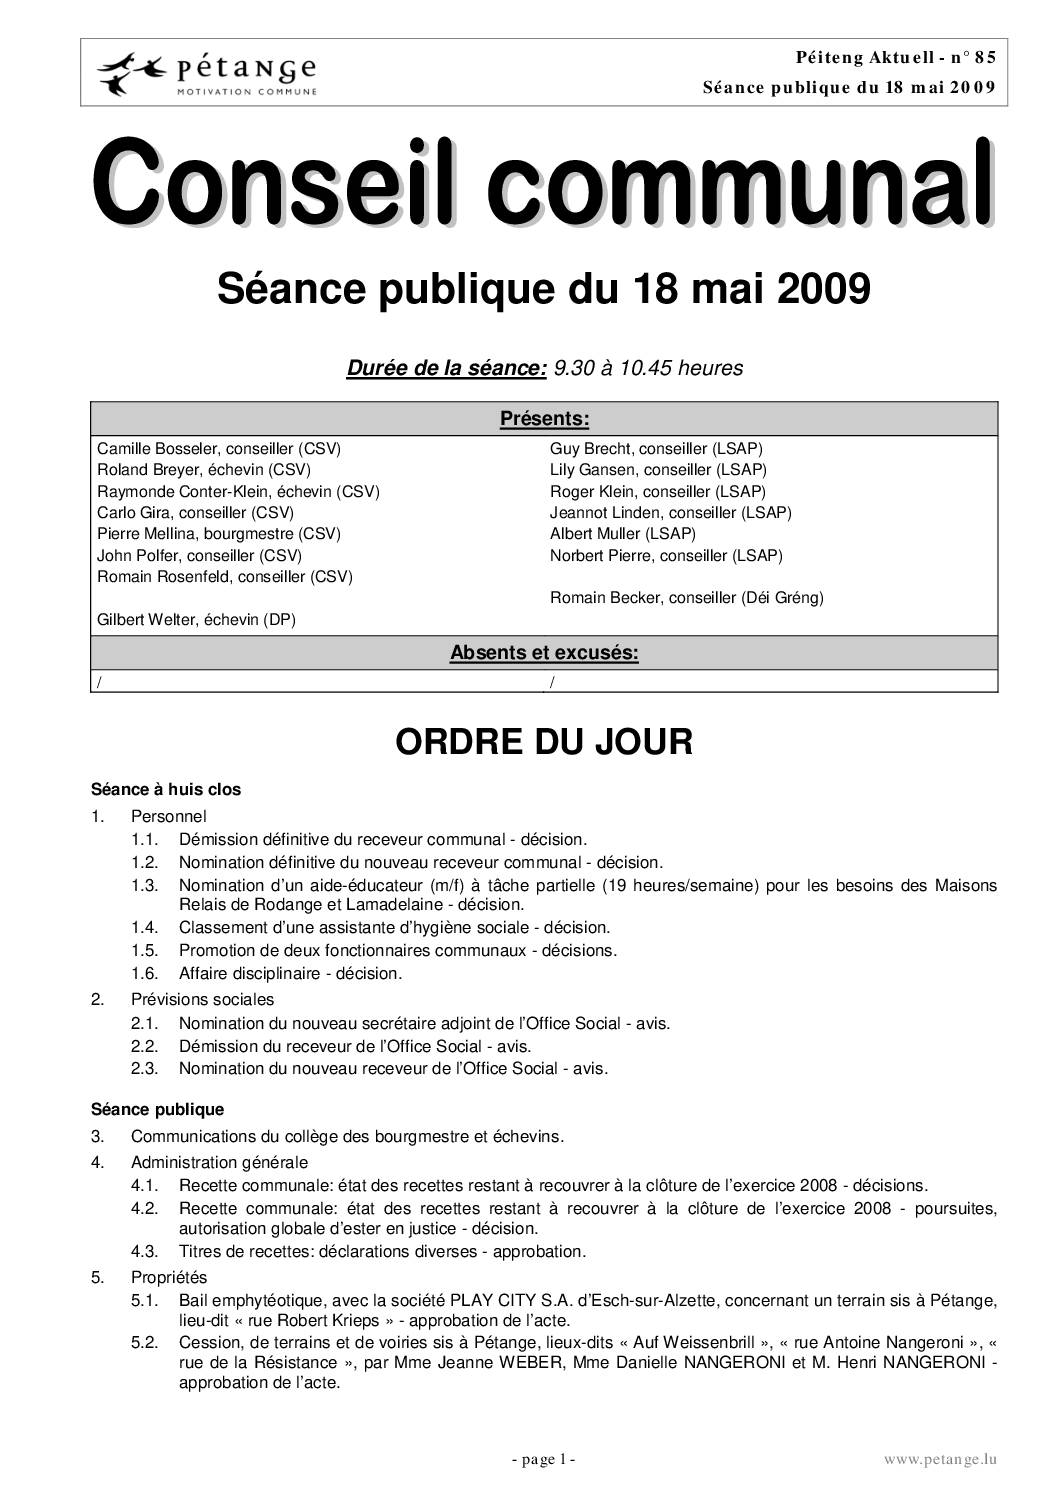 Rapport des séances du conseil communal du 18.05.2009; 15.06.2009; 13.07.2009 et 20.07.2009